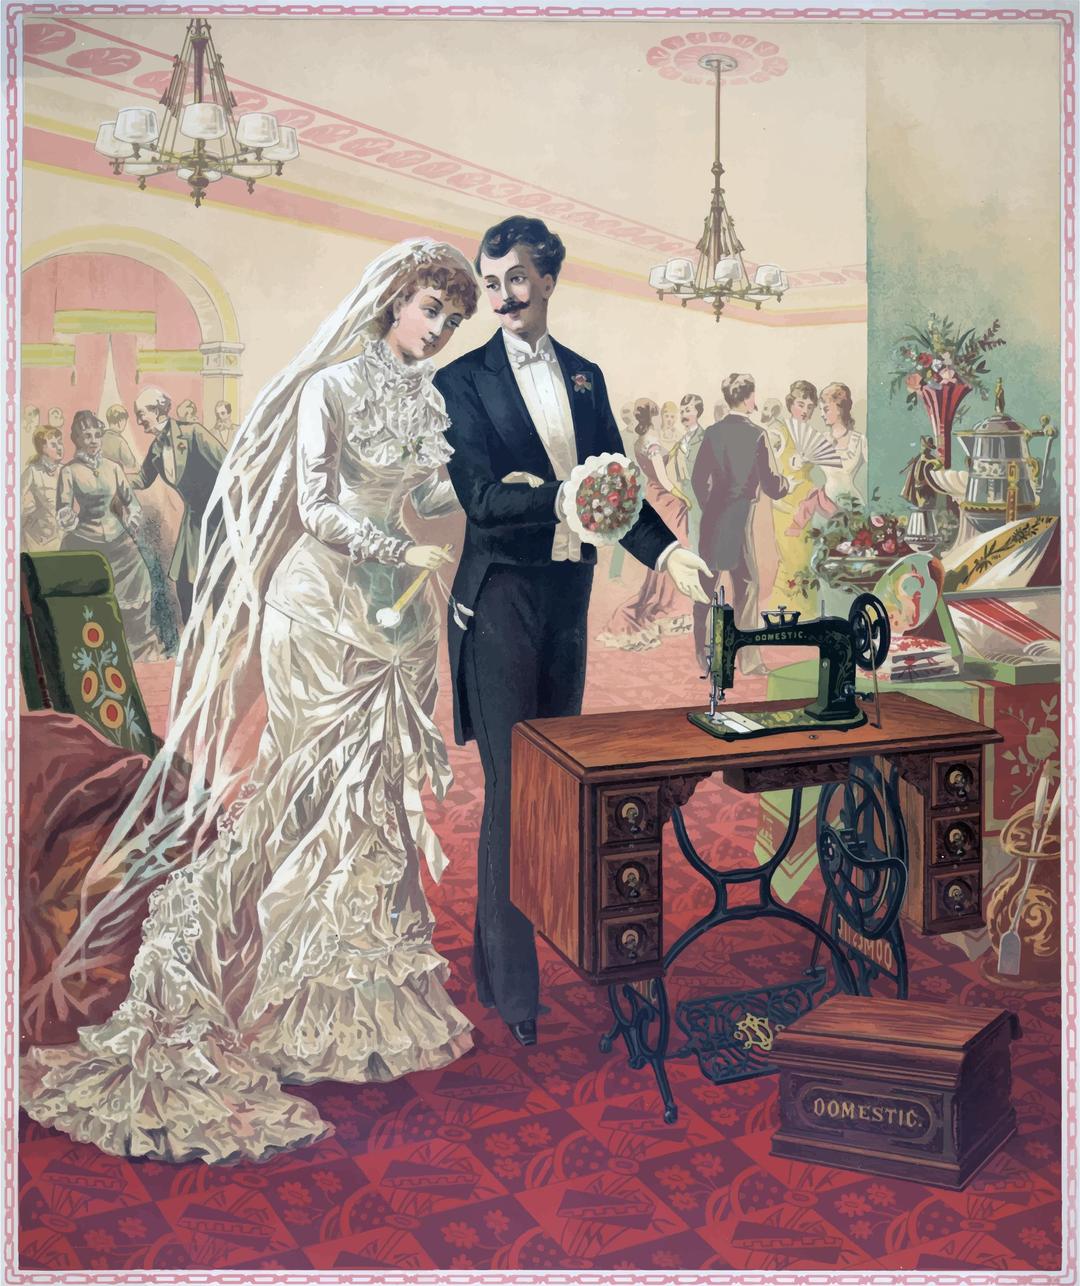 Vintage Bride And Groom Illustration png transparent